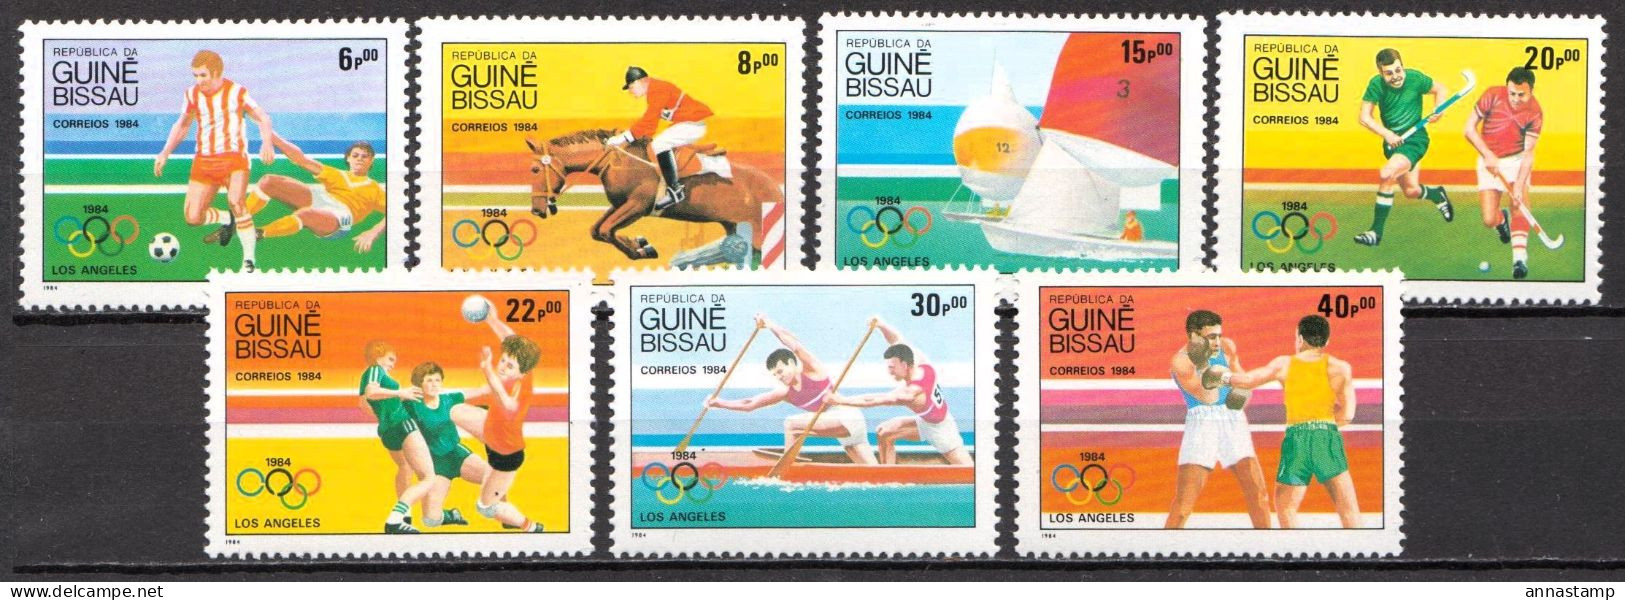 Guinea-Bissau MNH Set - Summer 1984: Los Angeles